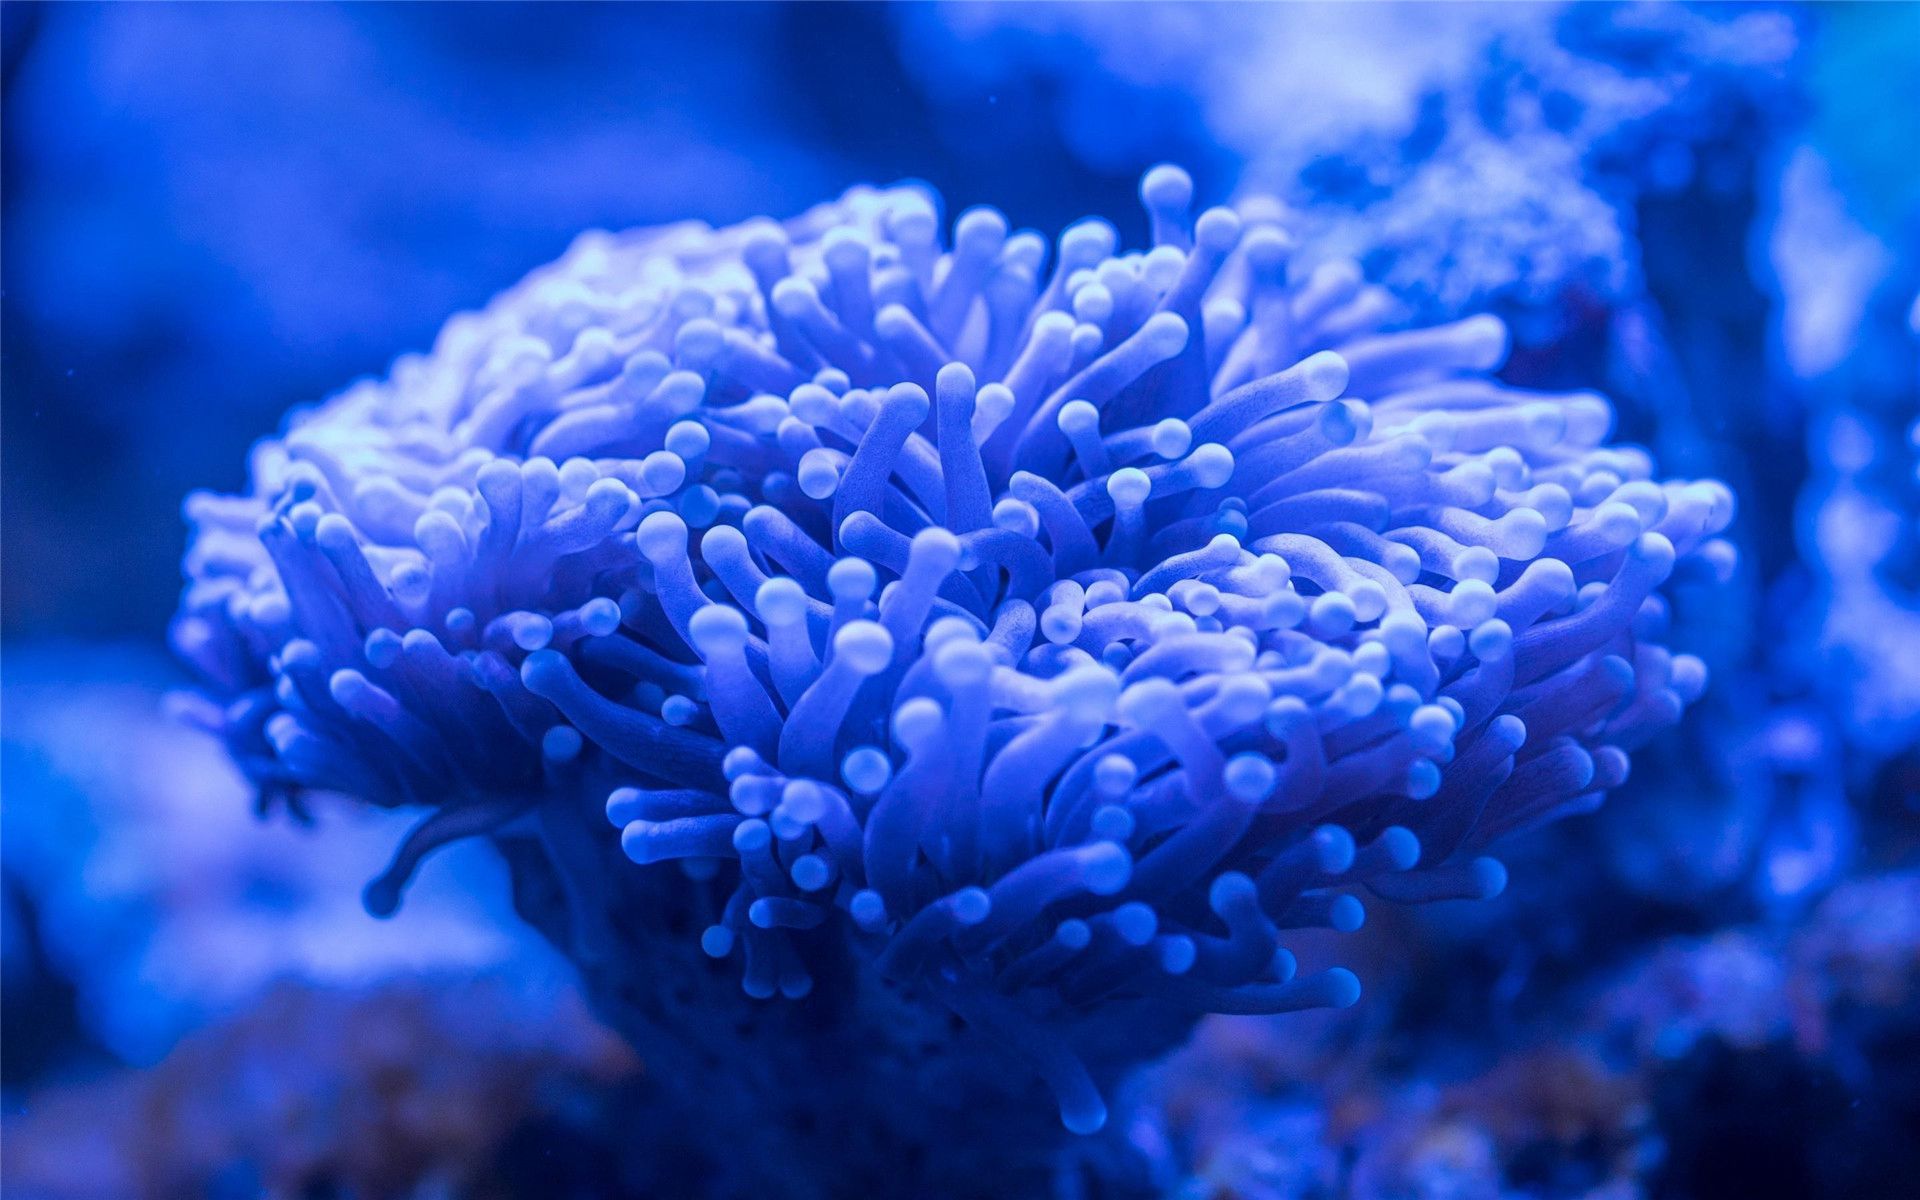 海底的世界，蔚蓝色的海底水下绝美珊瑚，鱼儿，贝壳等好看图片欣赏